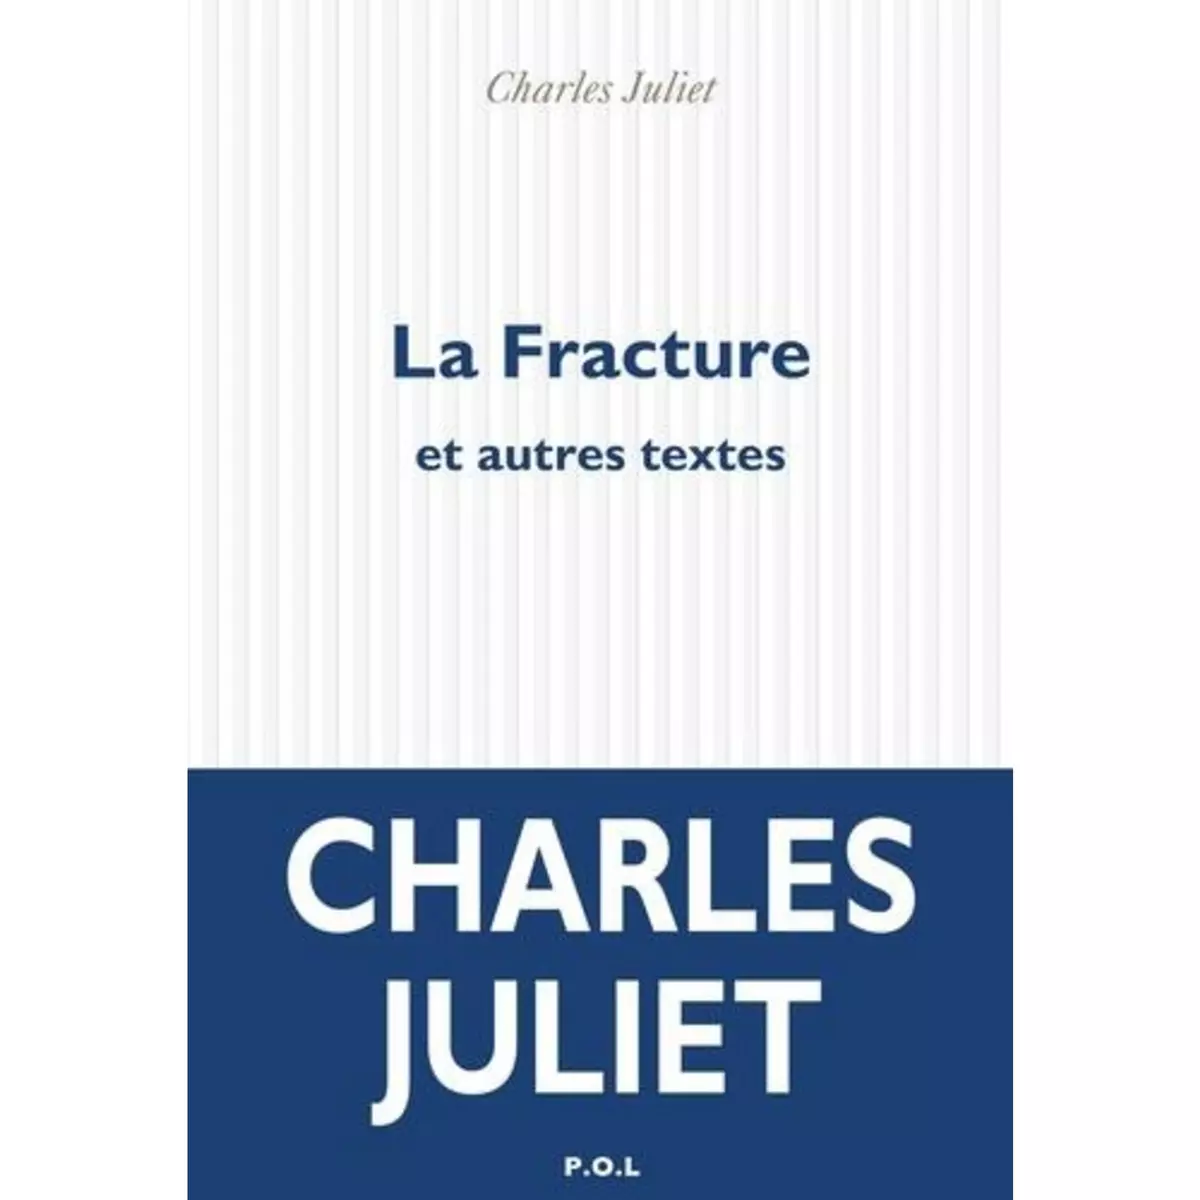  LA FRACTURE ET AUTRES TEXTES, Juliet Charles